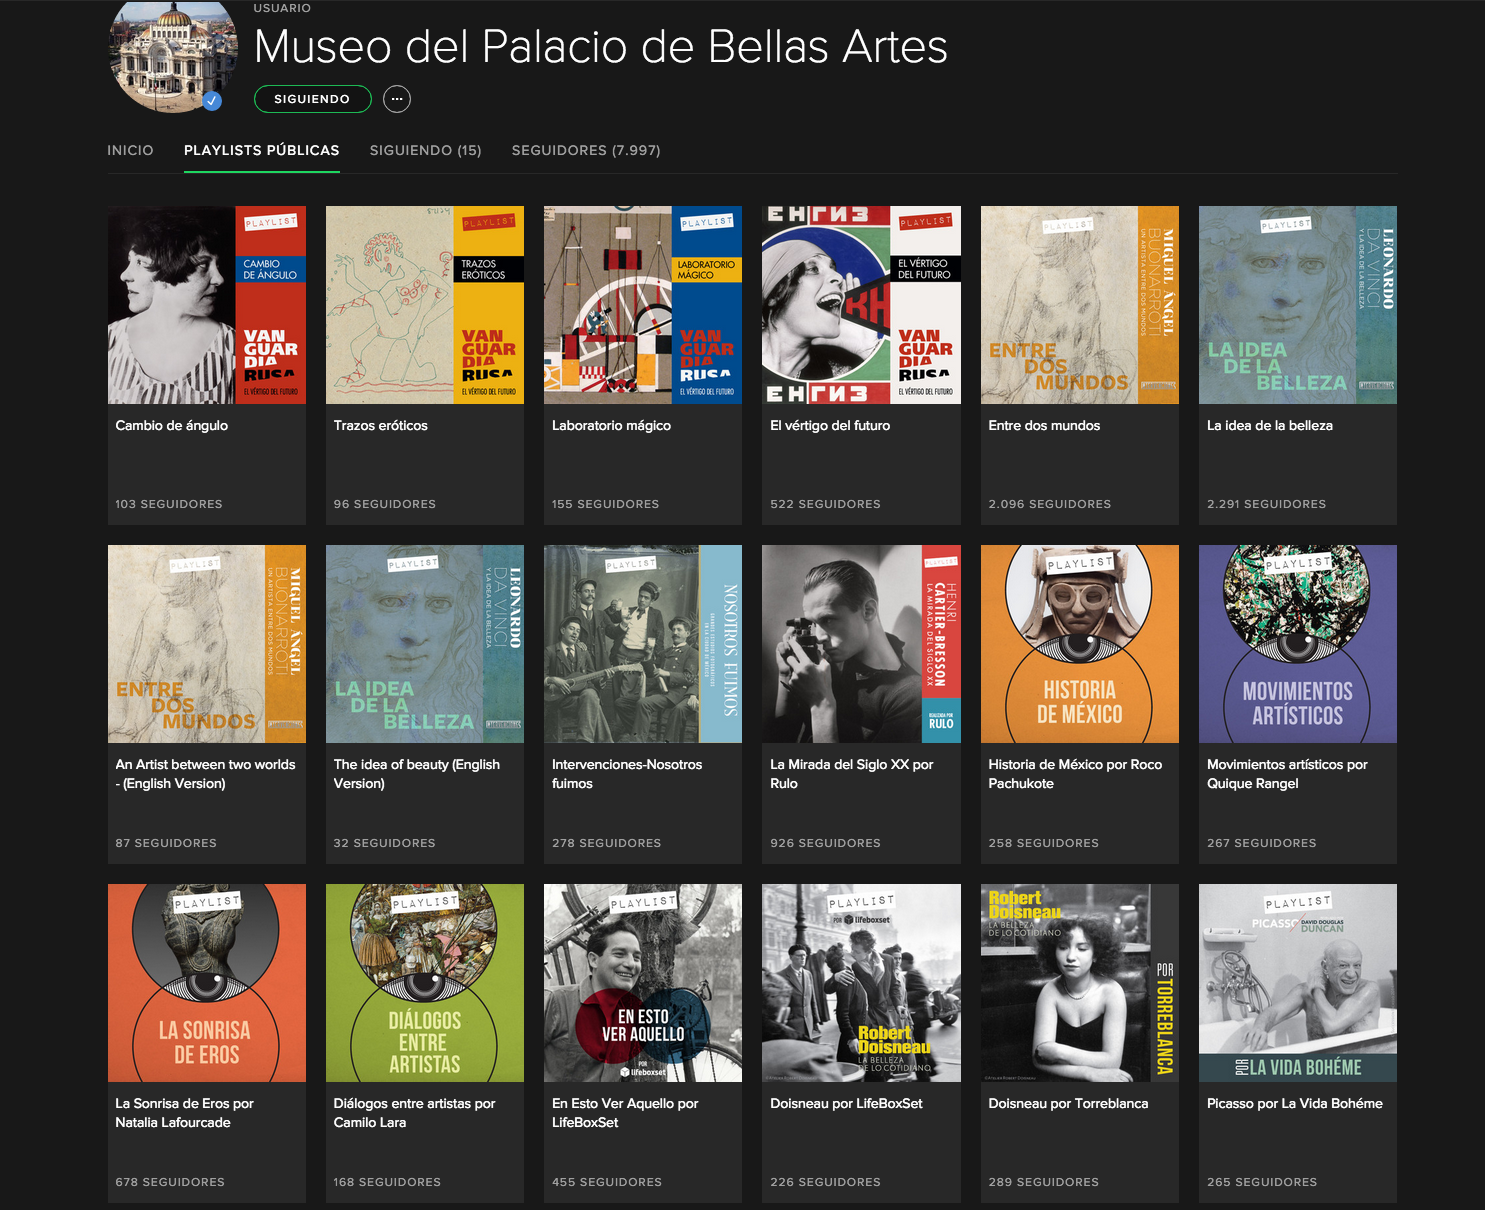 Playlist del Museo del Palacio de Bellas Artes.